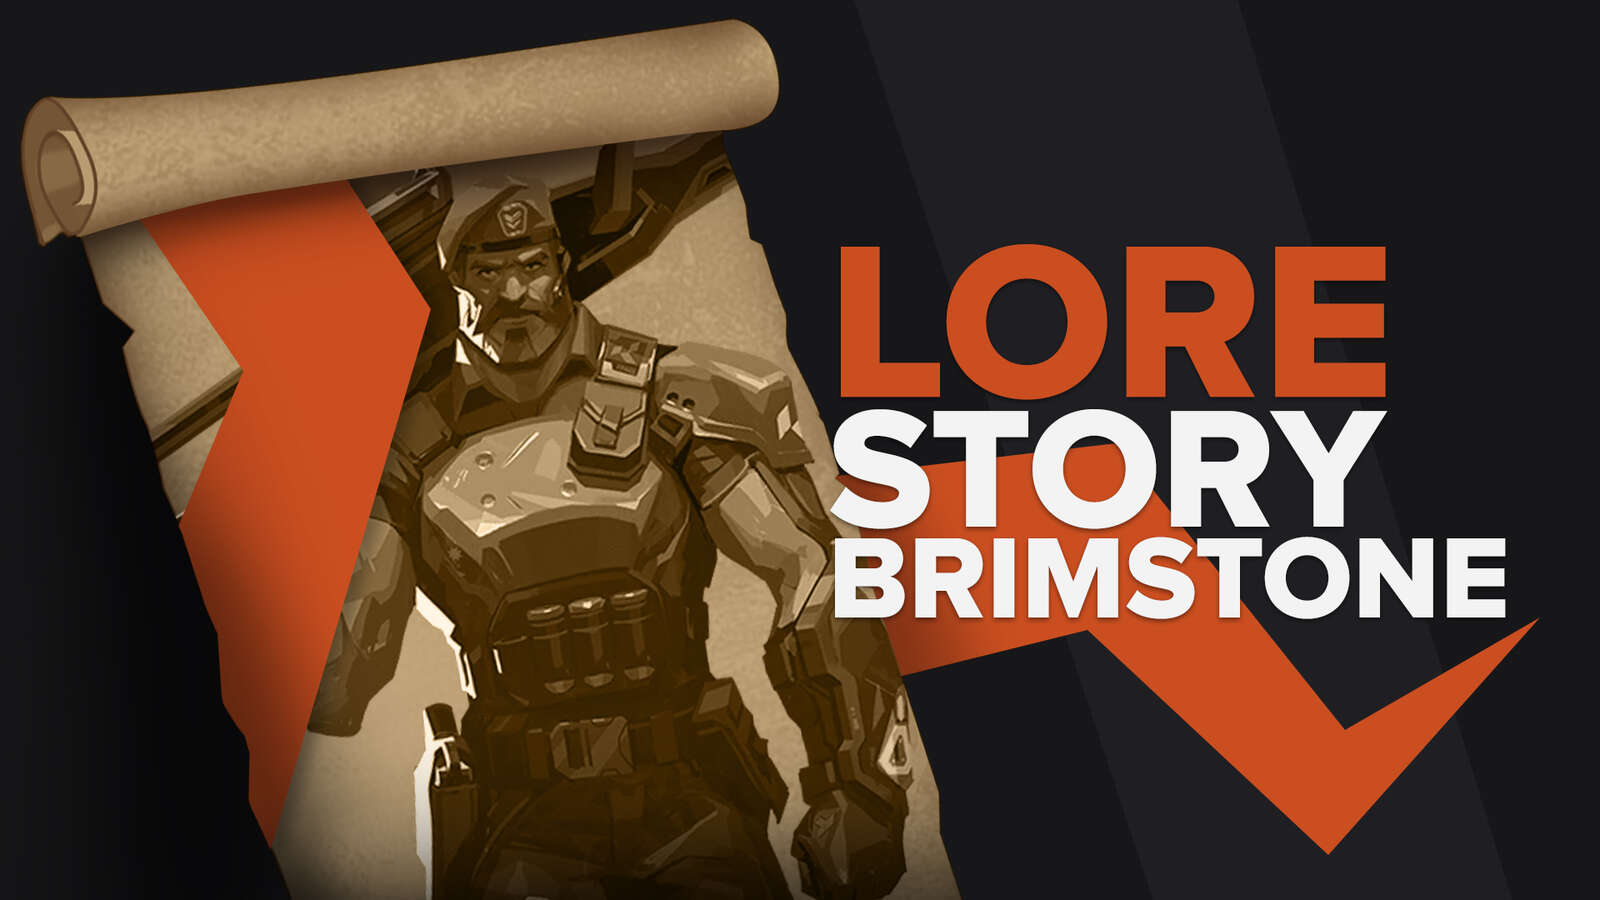 Valorant Lore Story Brimstone Explained